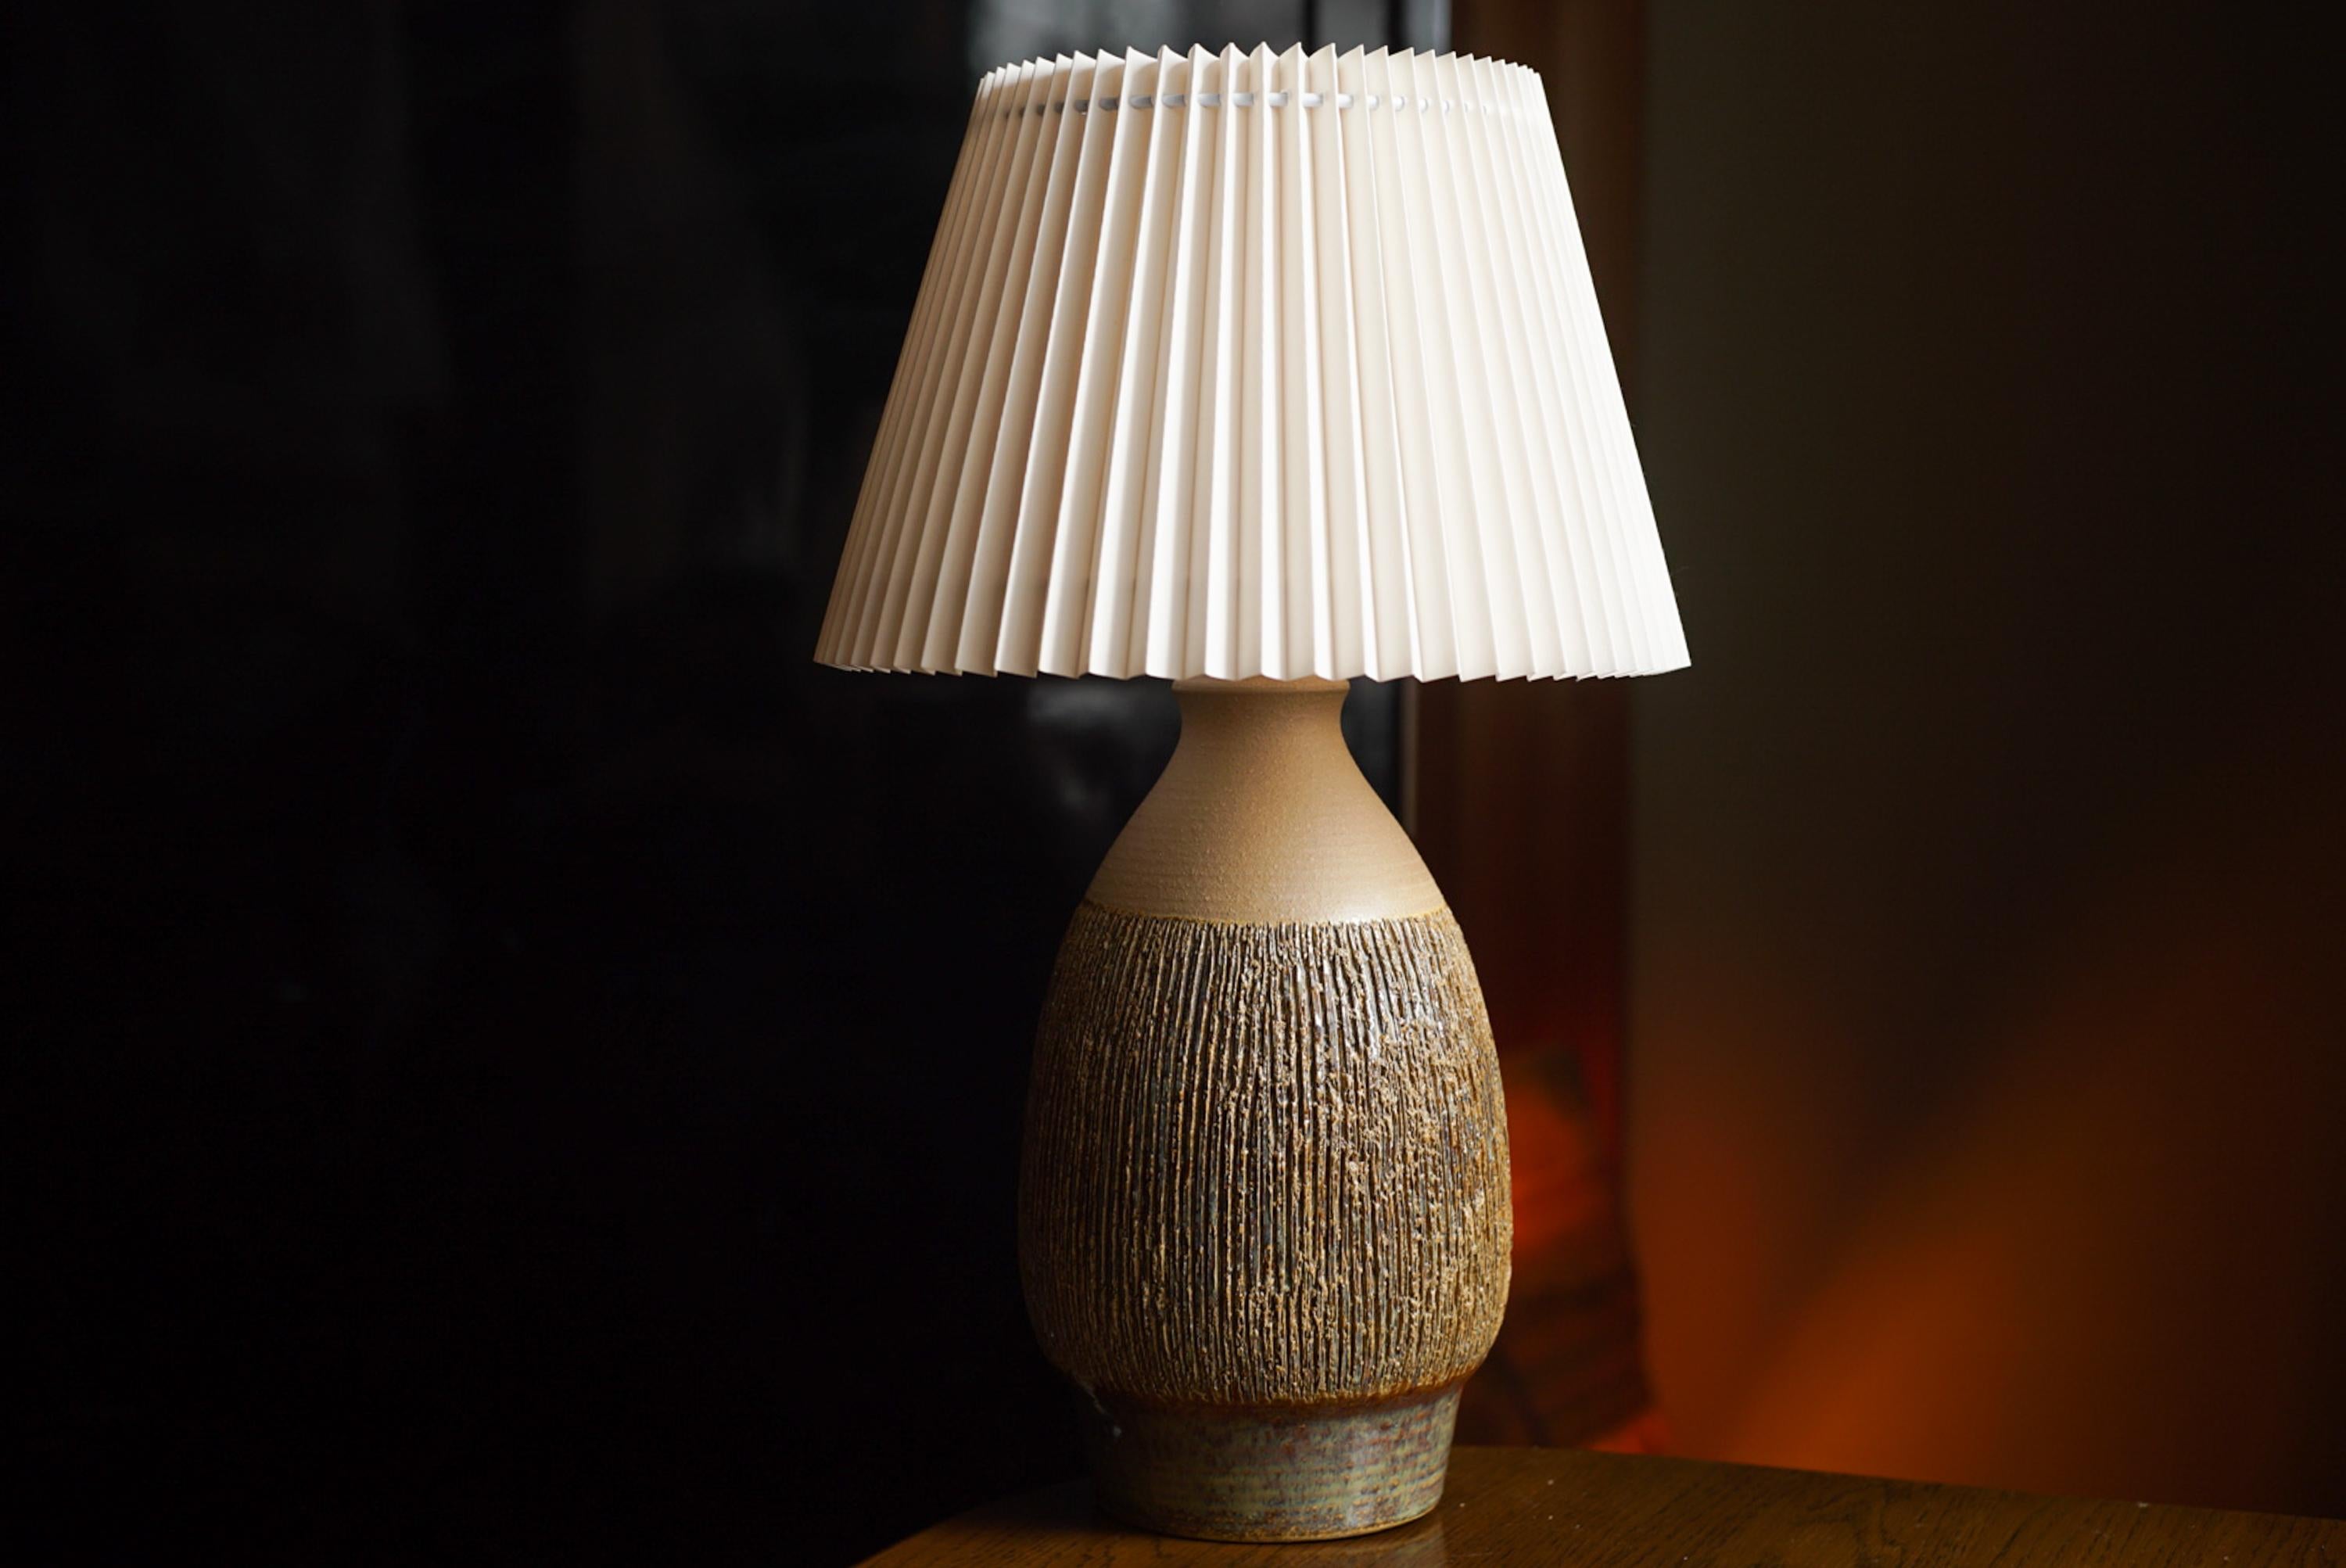 Eine Tischlampe aus Steingut, handgefertigt von SVEND AAGE JENSEN für Søholm auf der Insel Bornholm in Dänemark in den 1960er Jahren.

Auf dem Sockel gestempelt und signiert.

Verkauft ohne Lampenschirm. Höhe einschließlich Sockel. voll